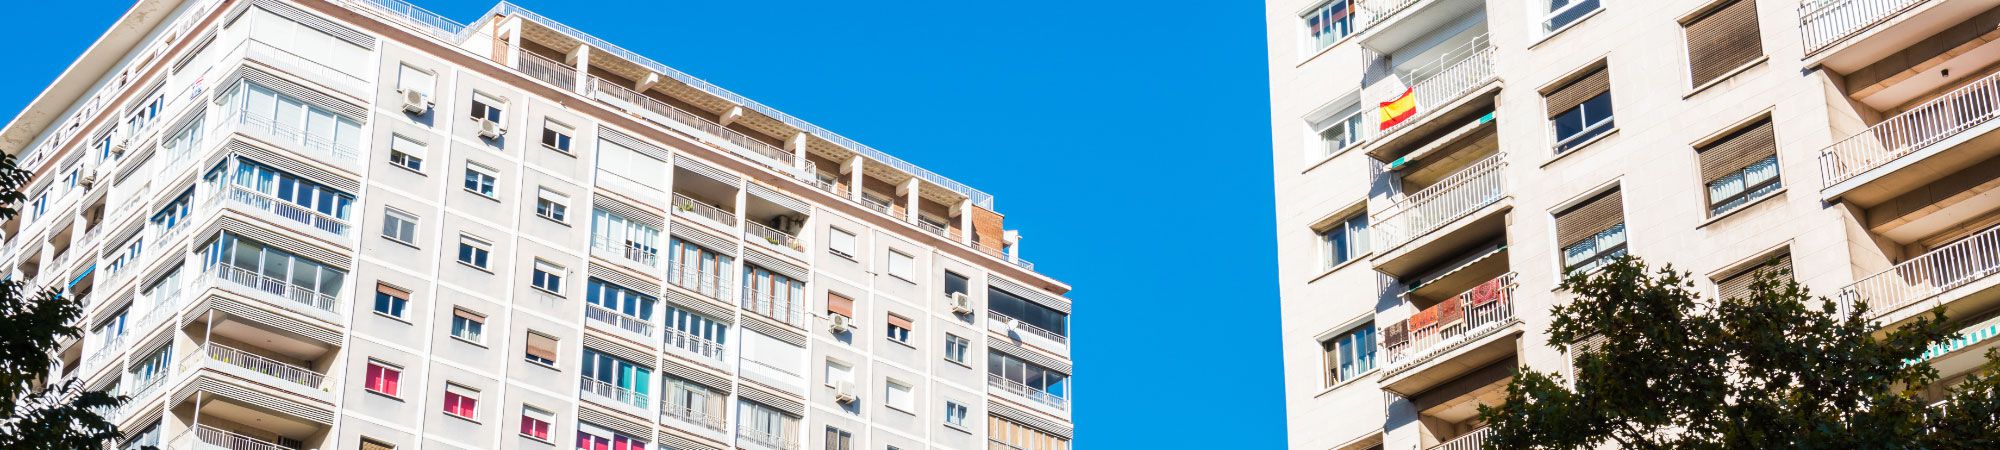 Amplia oferta de pisos, casas y locales  en venta en Sevilla